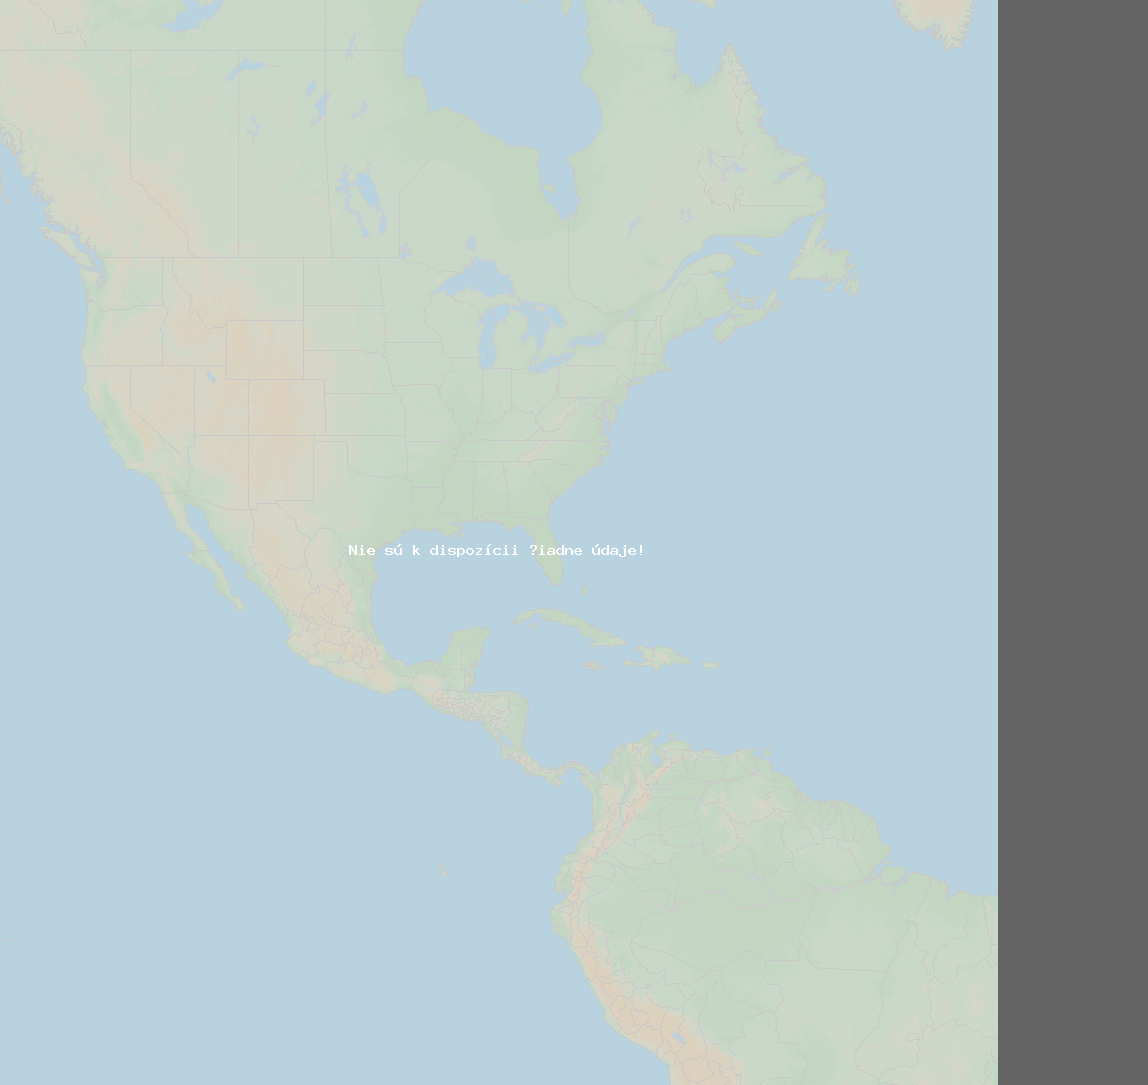 Pomer bleskov (Stanica Nepean) North America 2024 